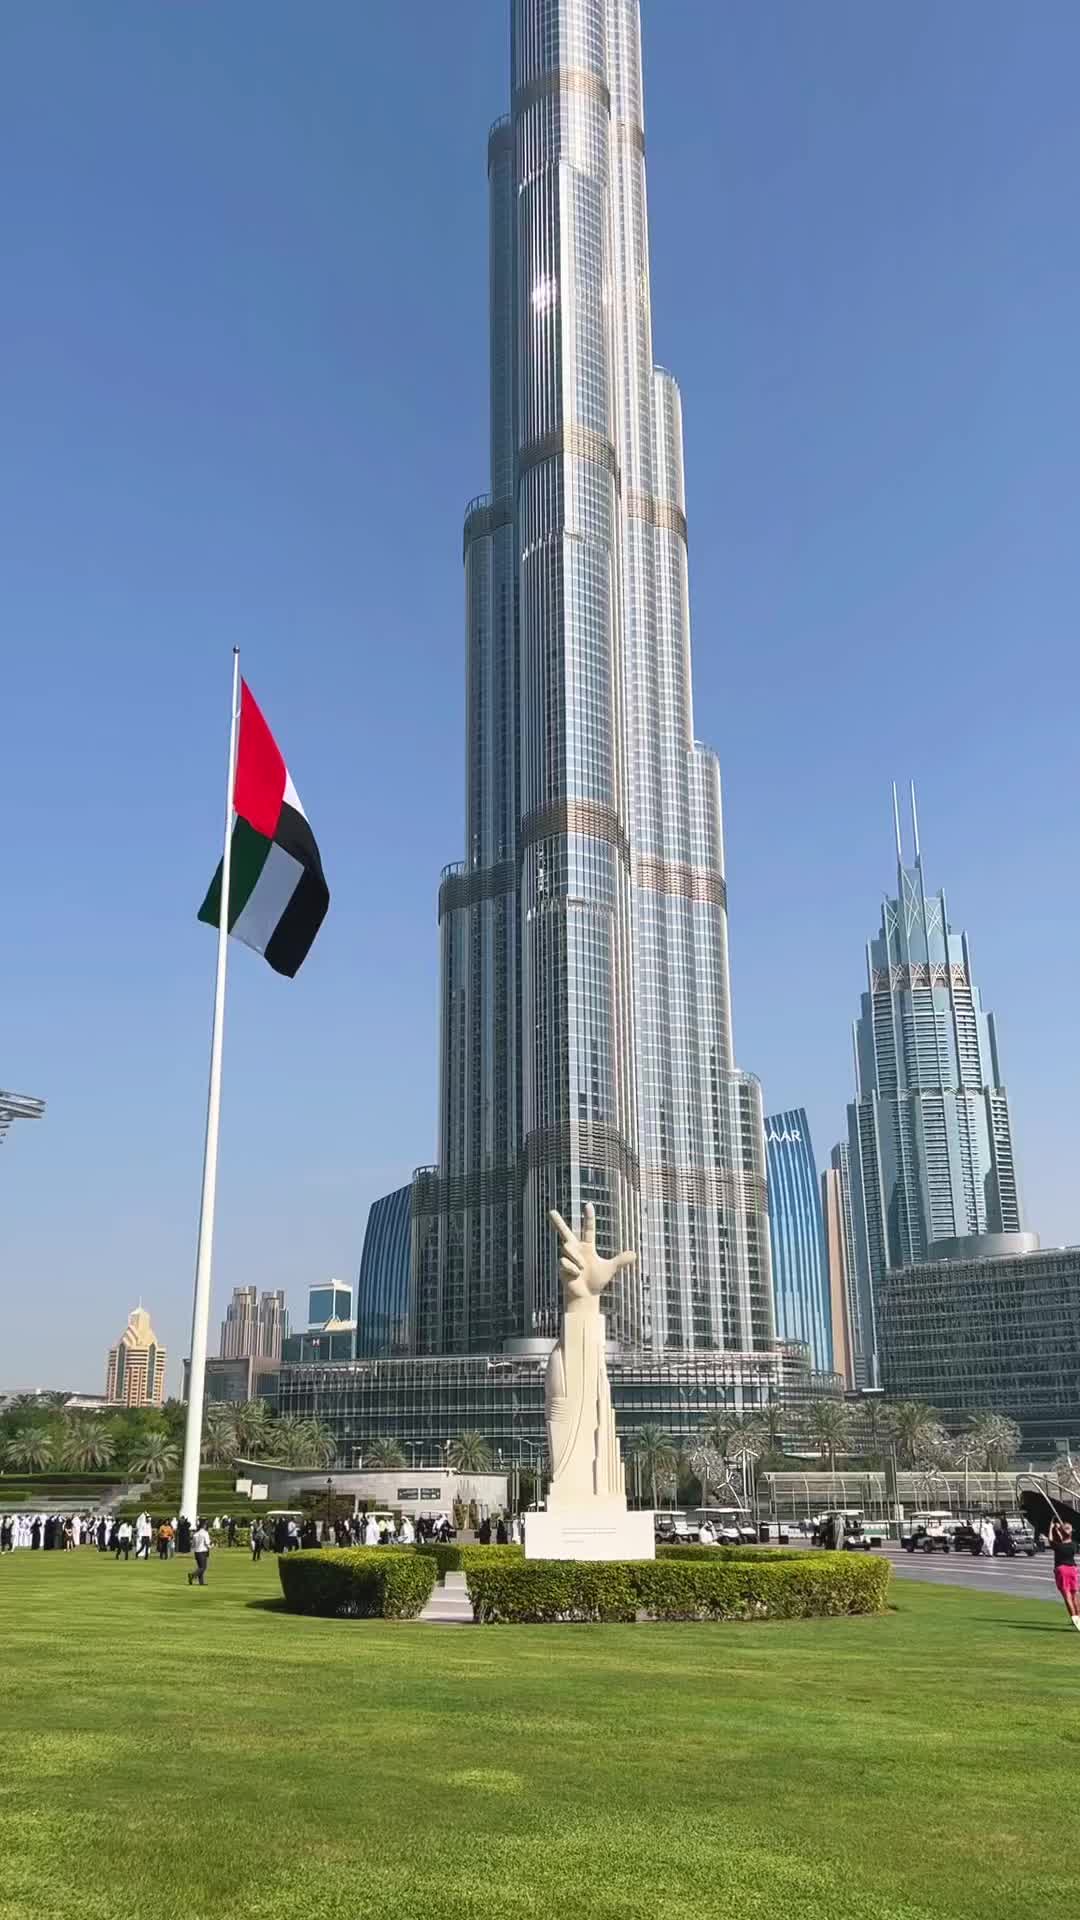 UAE Flag Day Celebration at Burj Khalifa, Dubai